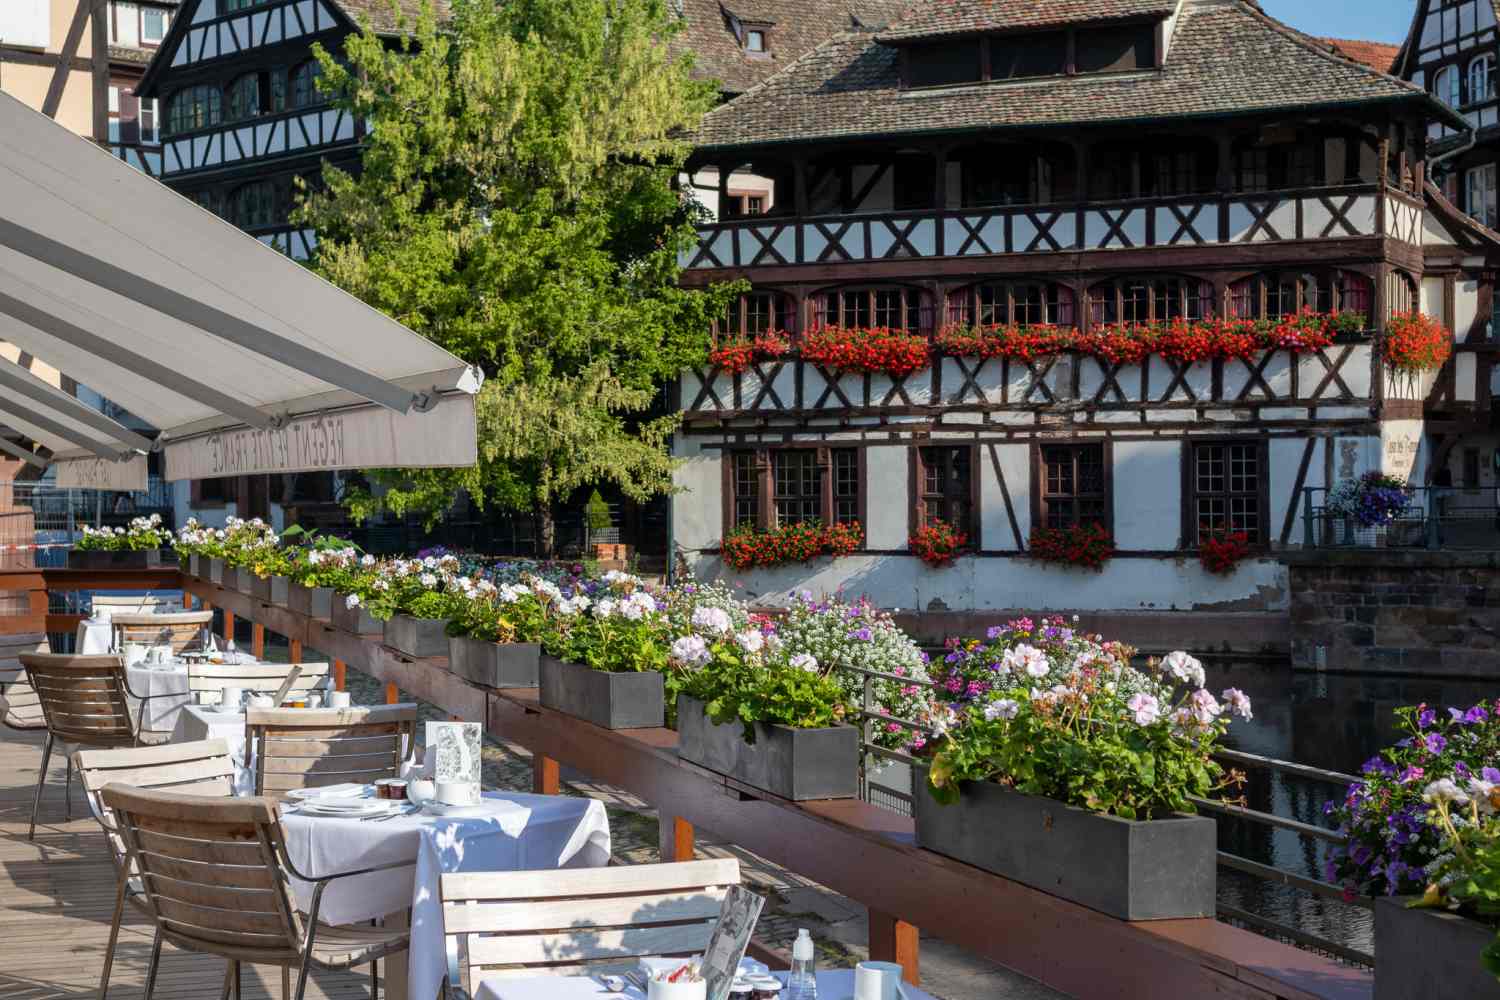 Hotel & Spa Regent Petite France Strasbourg, Alsace - France